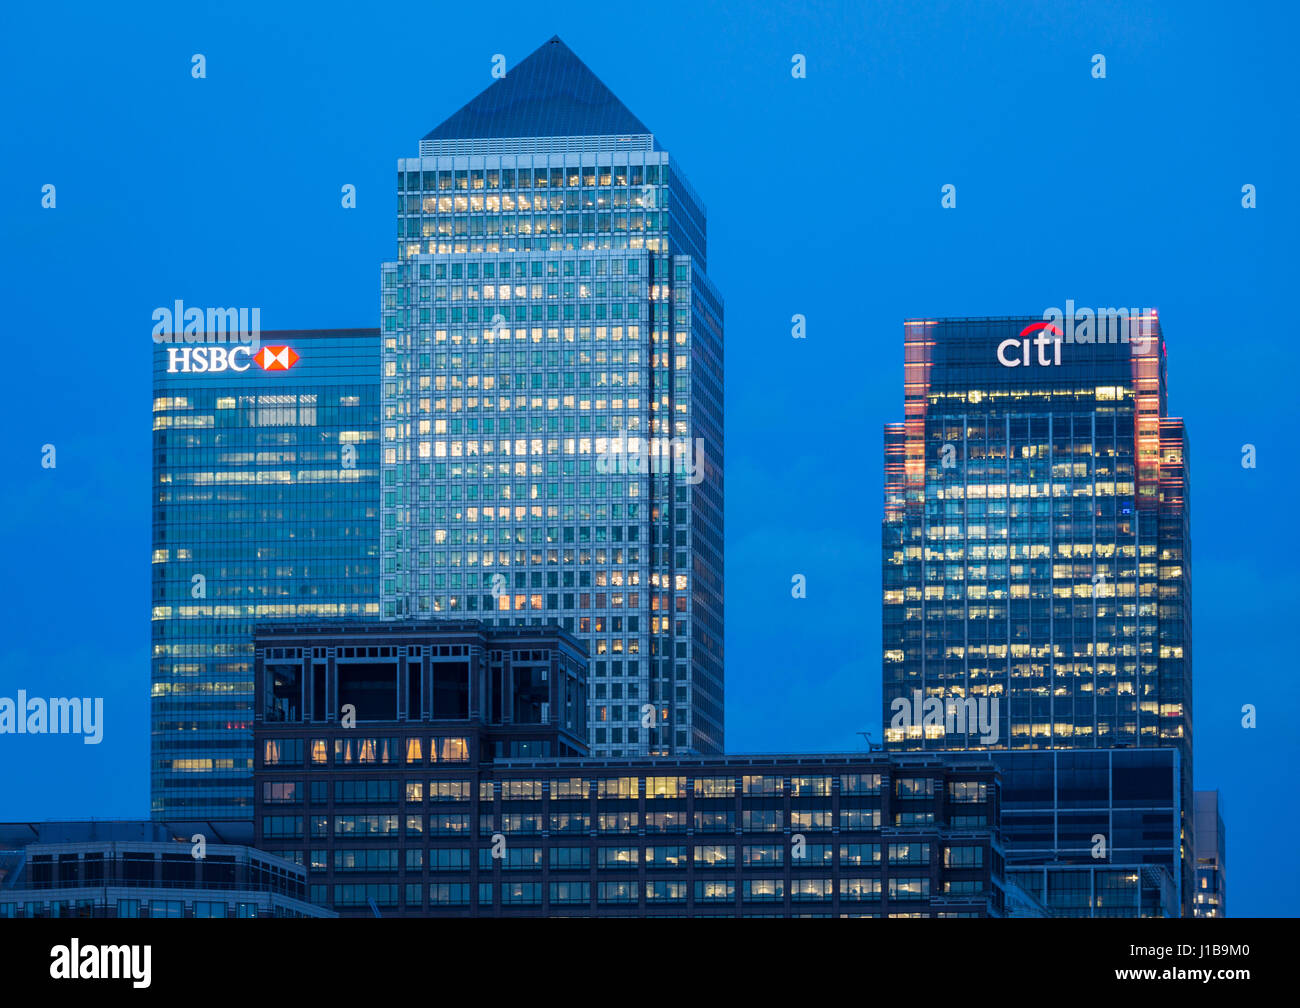 Canary Wharf skyline - vue de la nuit de l'allumé centre financier de Canary Wharf, les Docklands, London, England, UK Banque D'Images